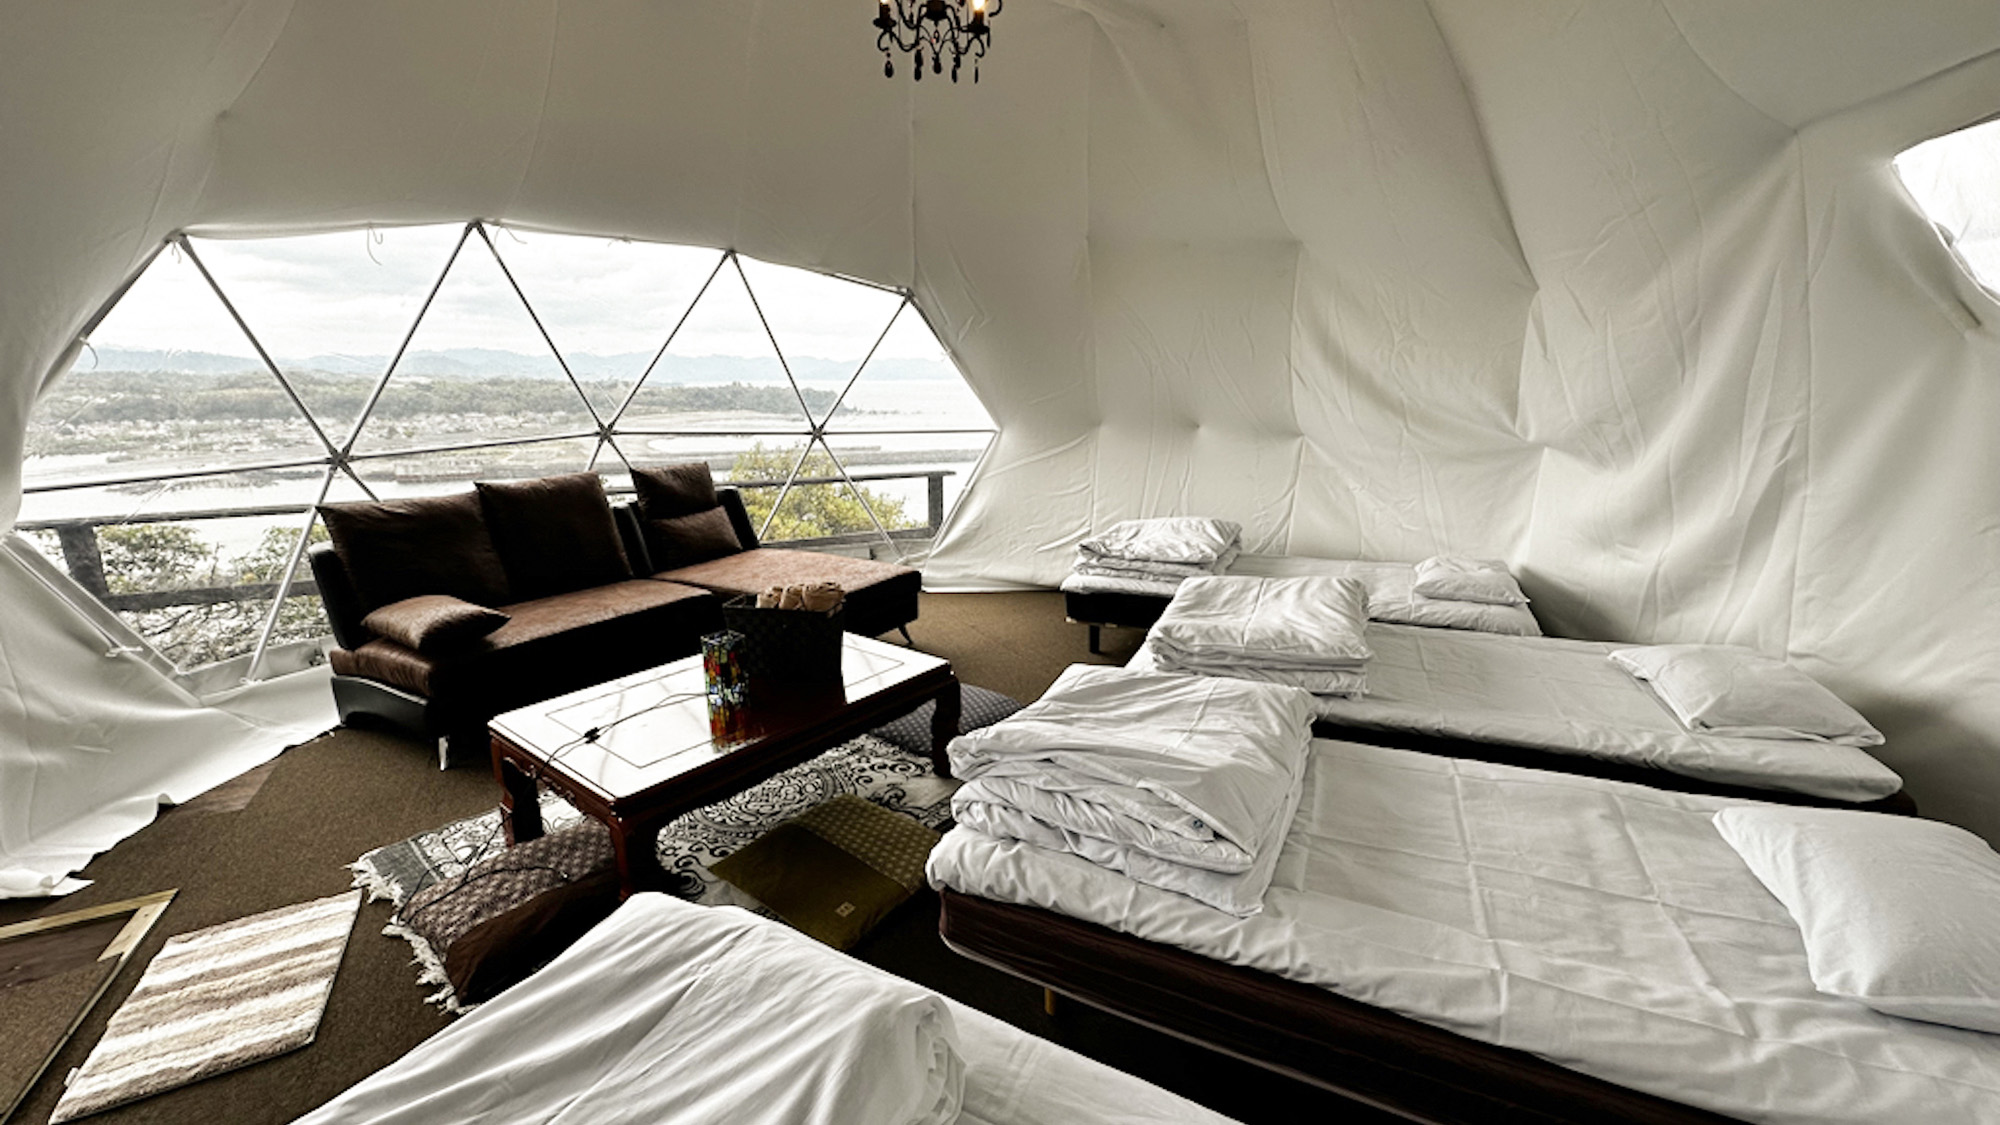 ・【オーシャンドーム9】8名様までご宿泊可能。広々としたテントで快適なグランピングをお楽しみください